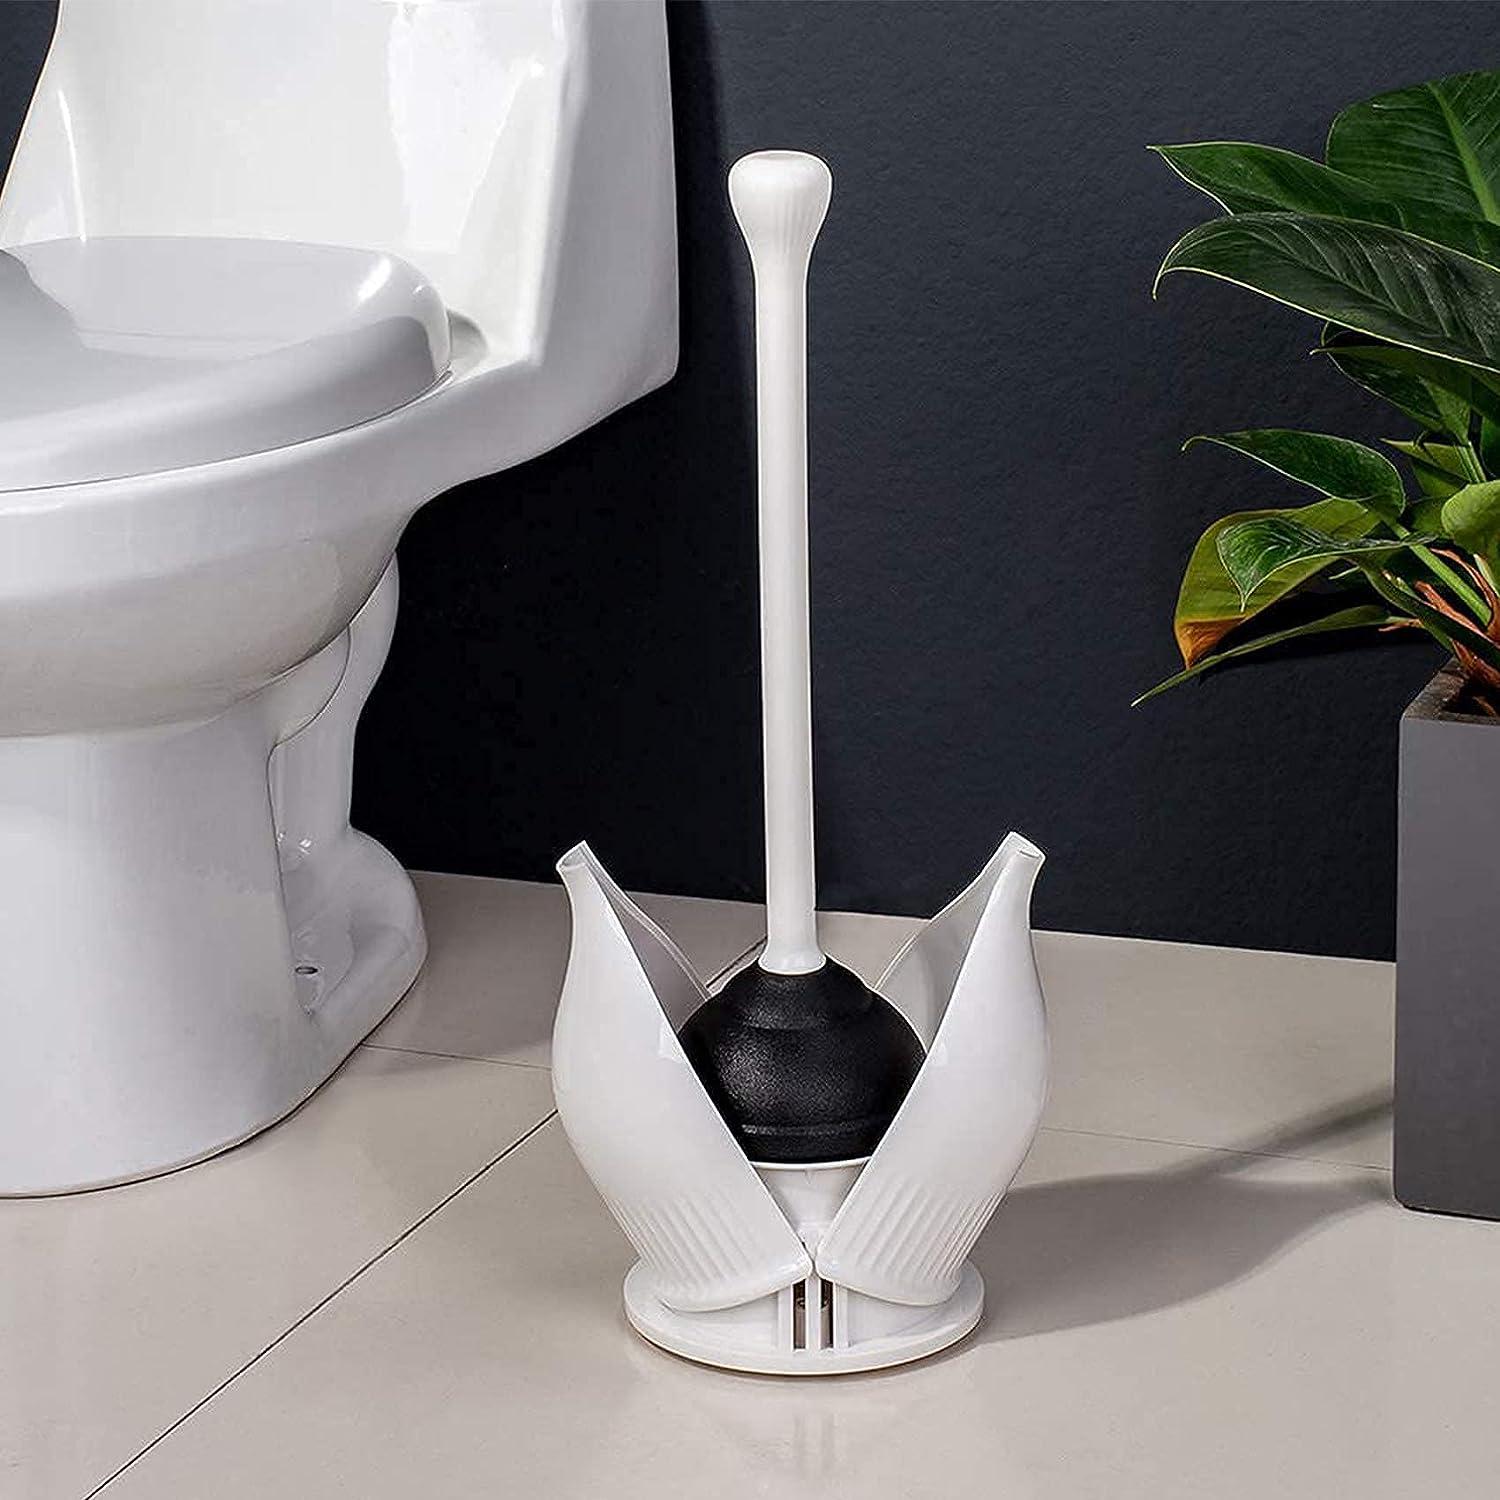 Mini Sink Plunger with Ergonomic Handle, Kitchen Drain Plunger, 4.5 X 4.5  X 7.